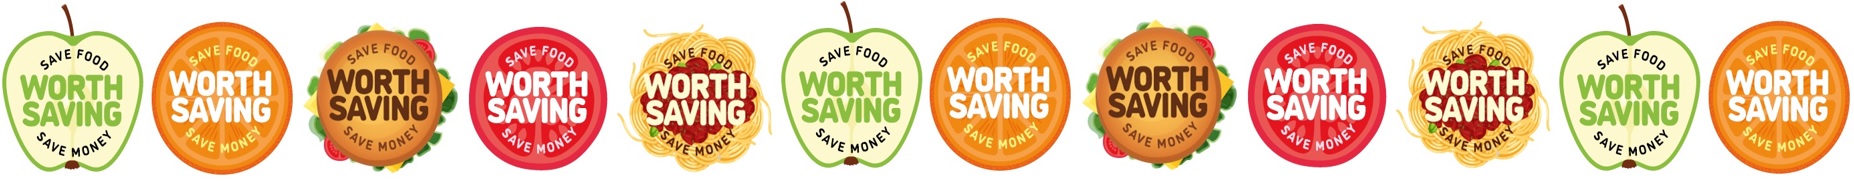 Food waste logos